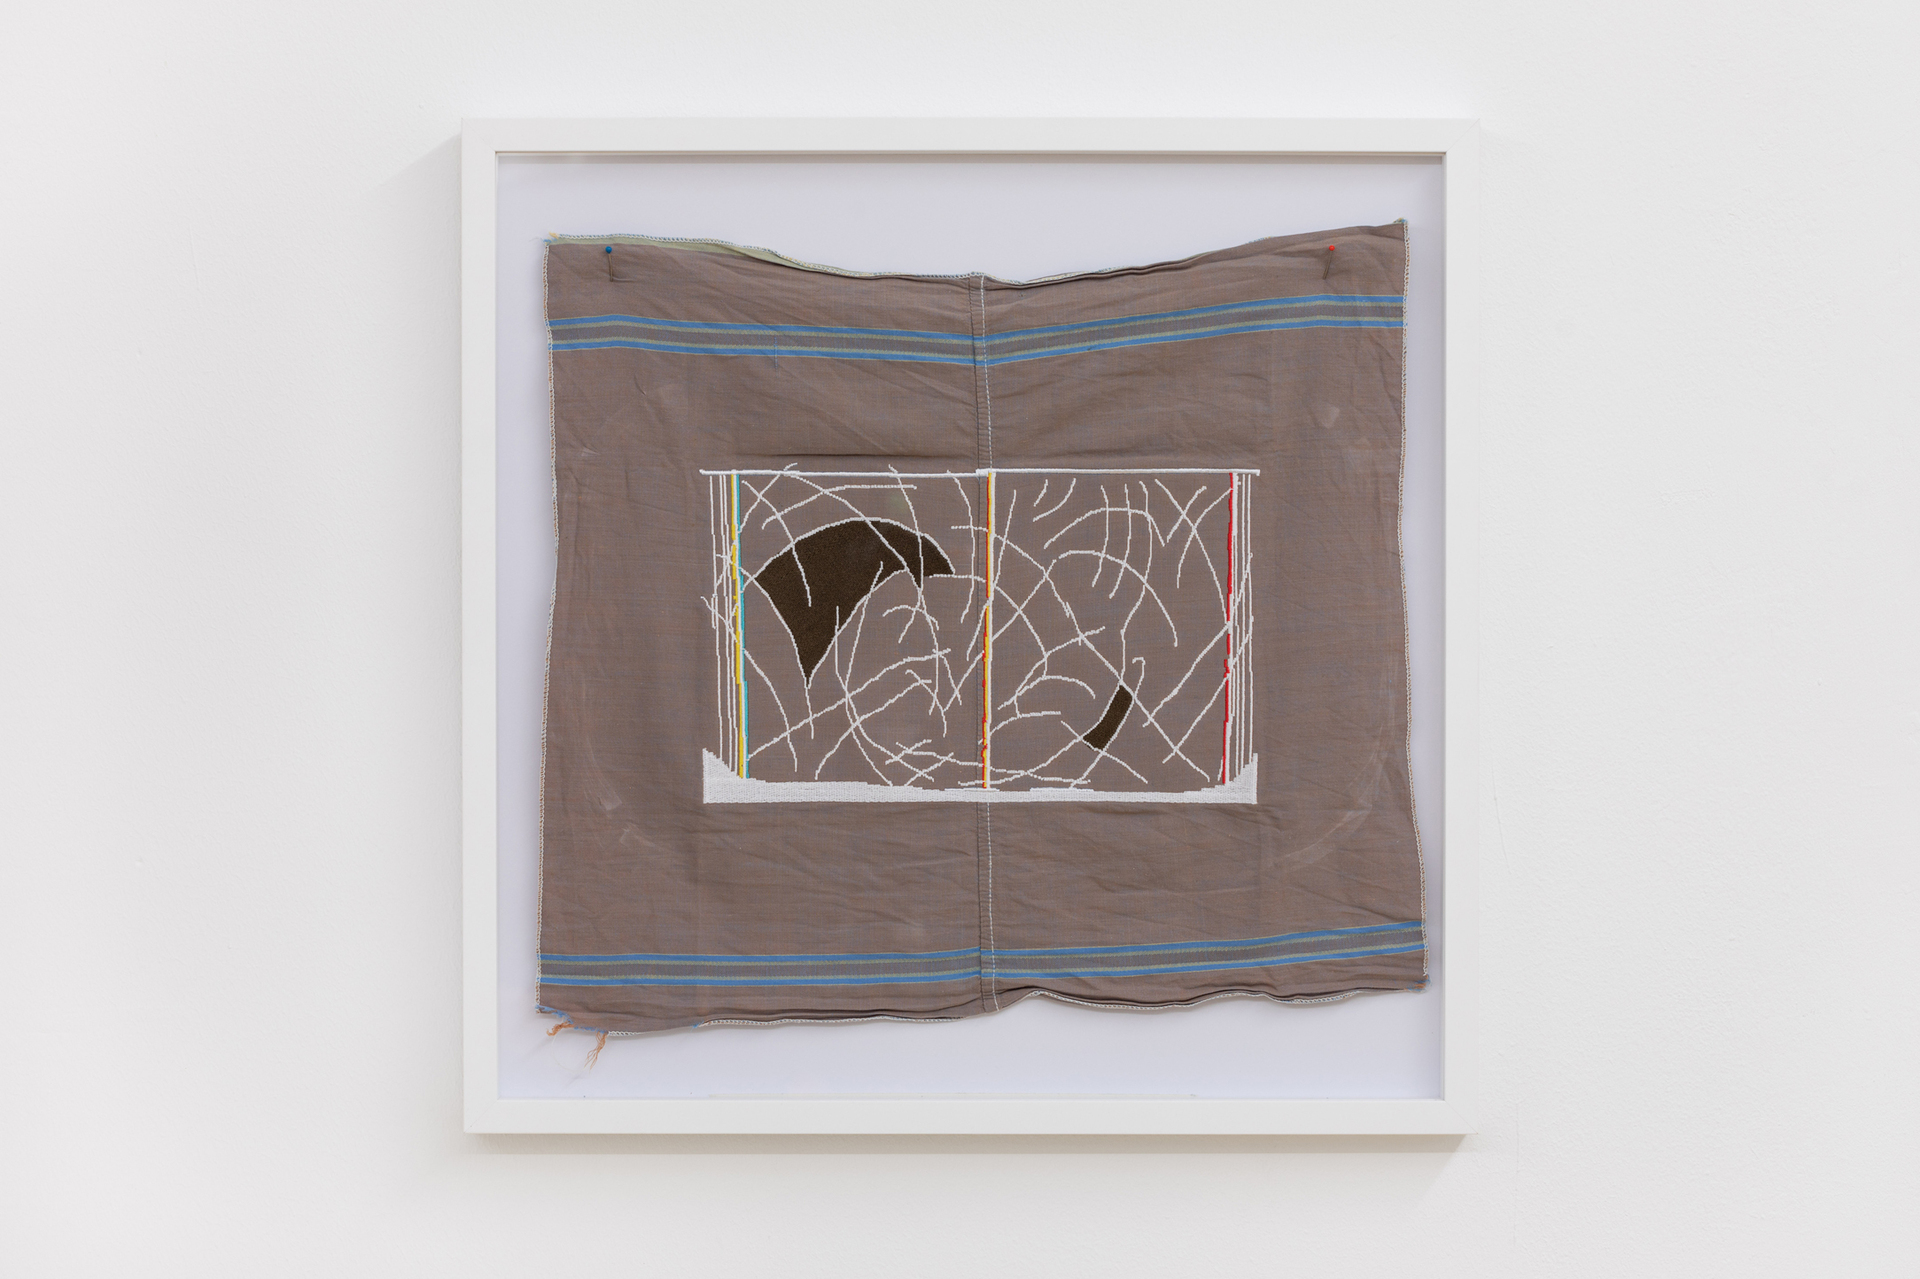 Ernst Markus Stein, zaunstudie (nyc), 2020, Embroidery on handkerchief, 52,5 cm x 52,5 cm (framed)